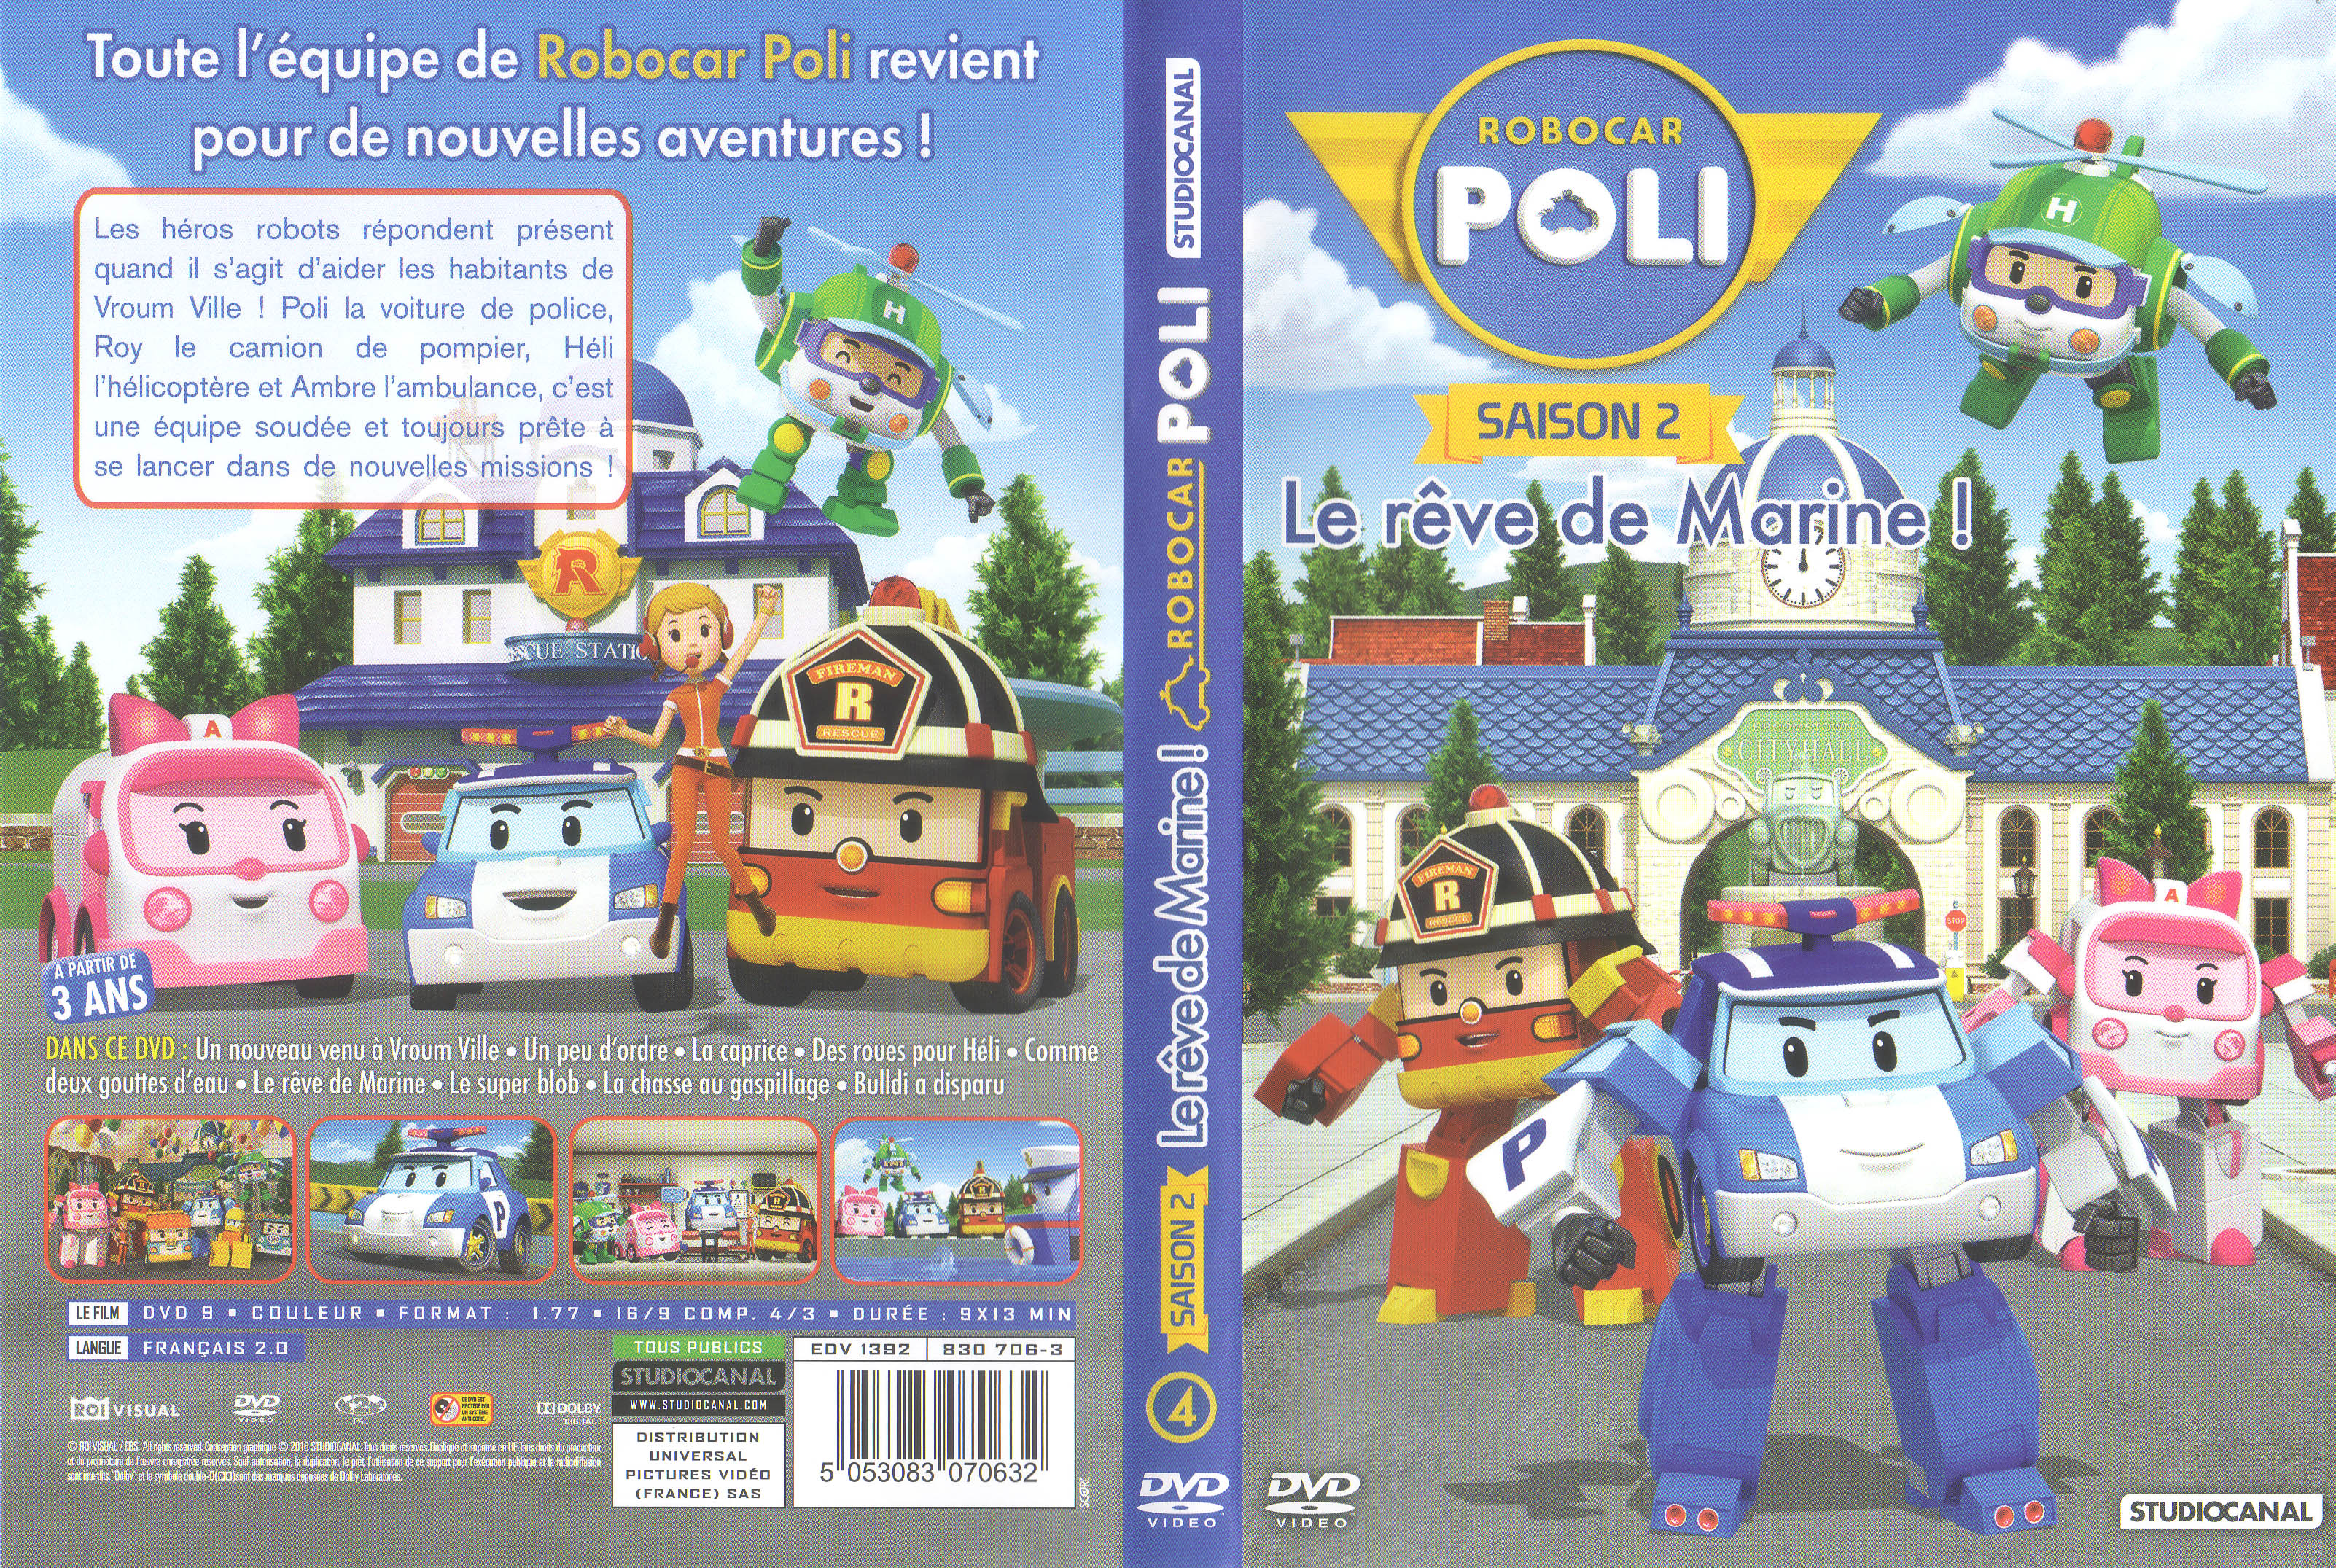 Jaquette DVD Robocar Poli Saison 2 - Le reve de Marine